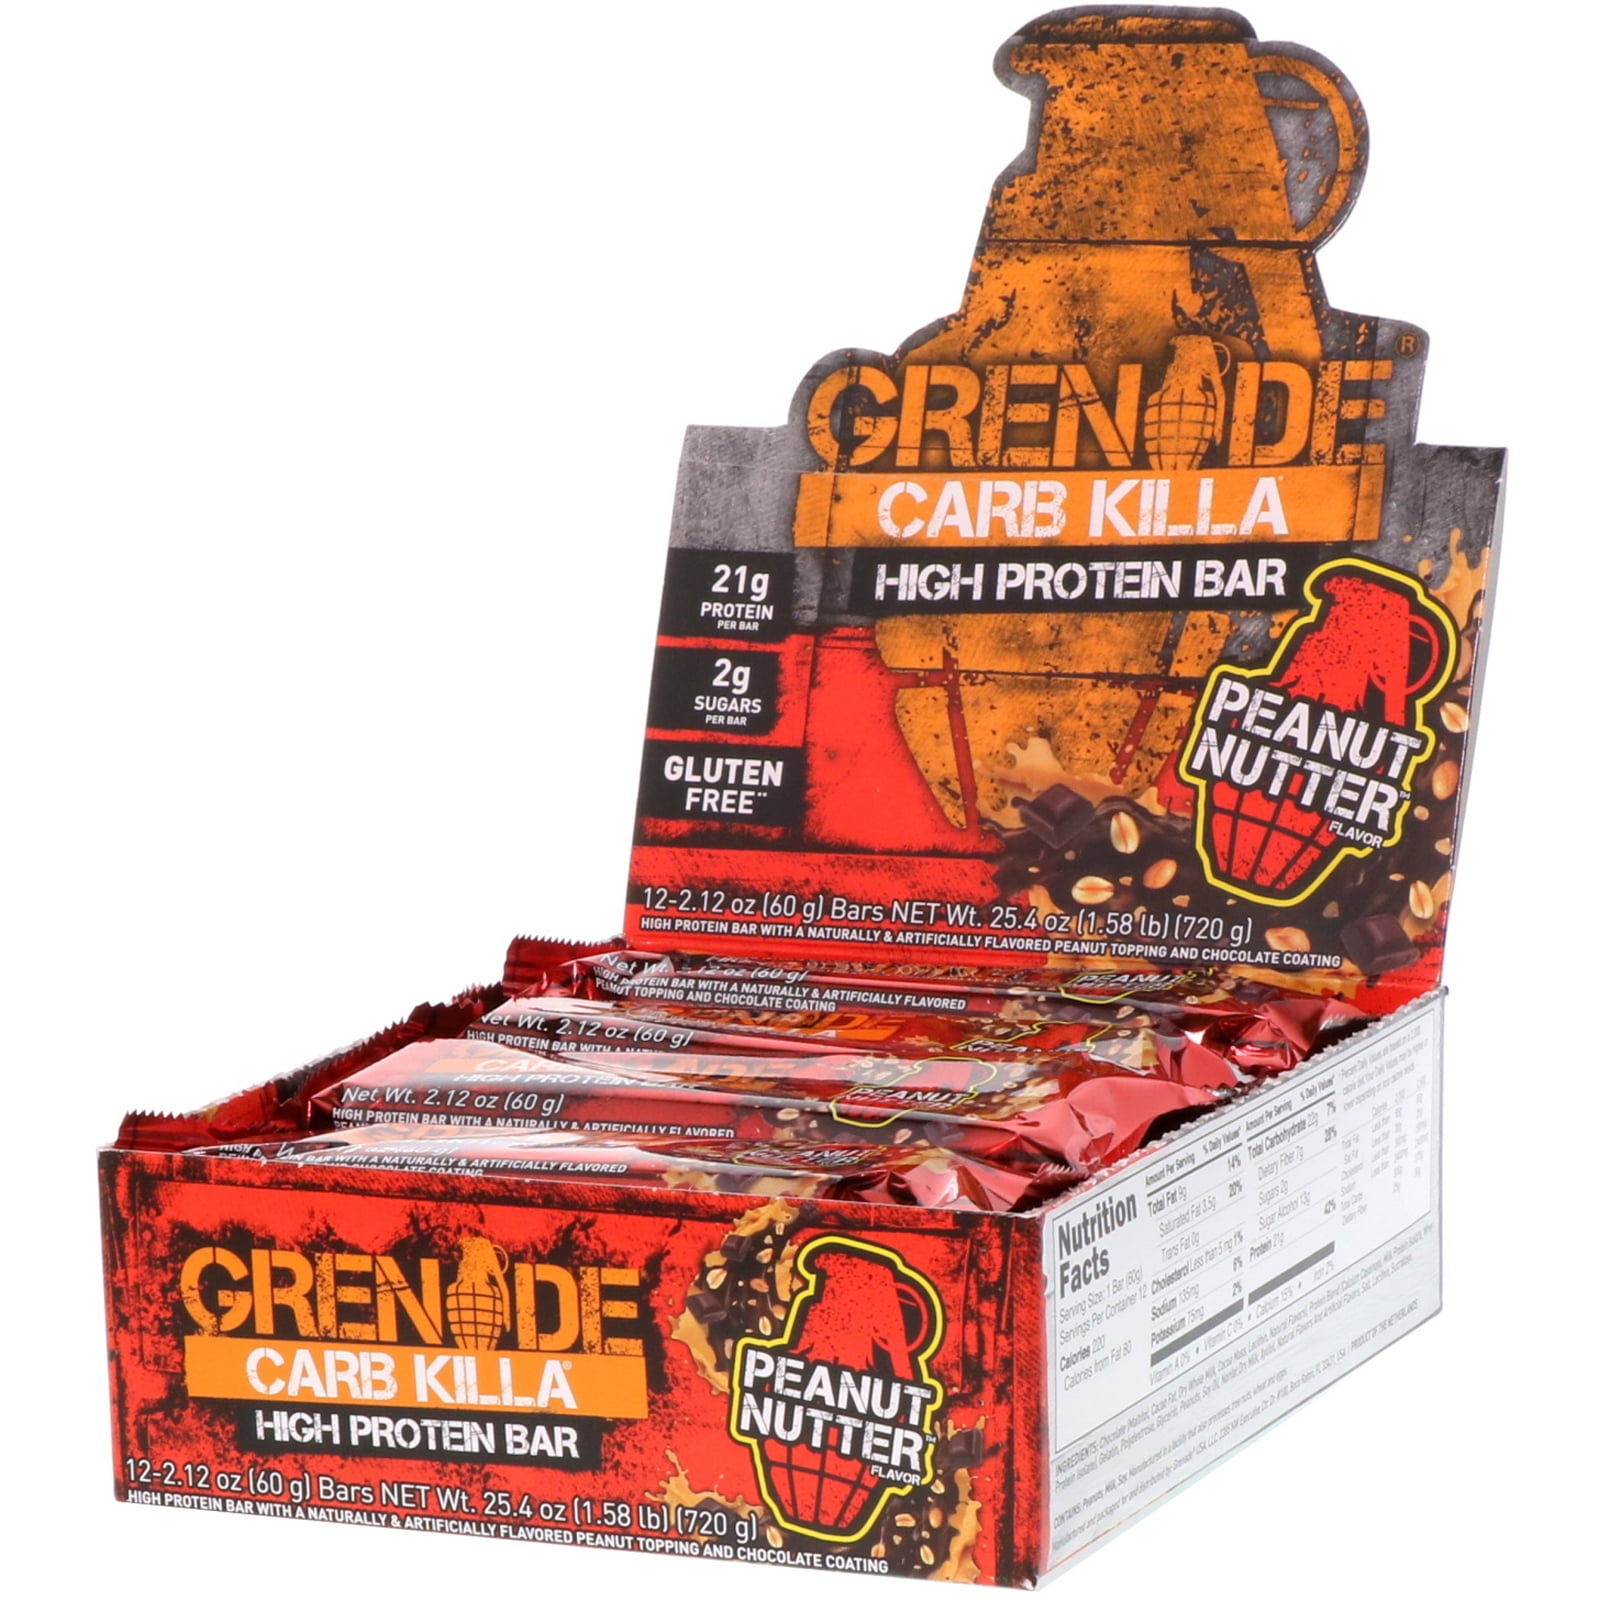 Grenade CARB Killa barras 12 o comprar 24 bares proteína-todos los nuevos sabores fechas de largo!